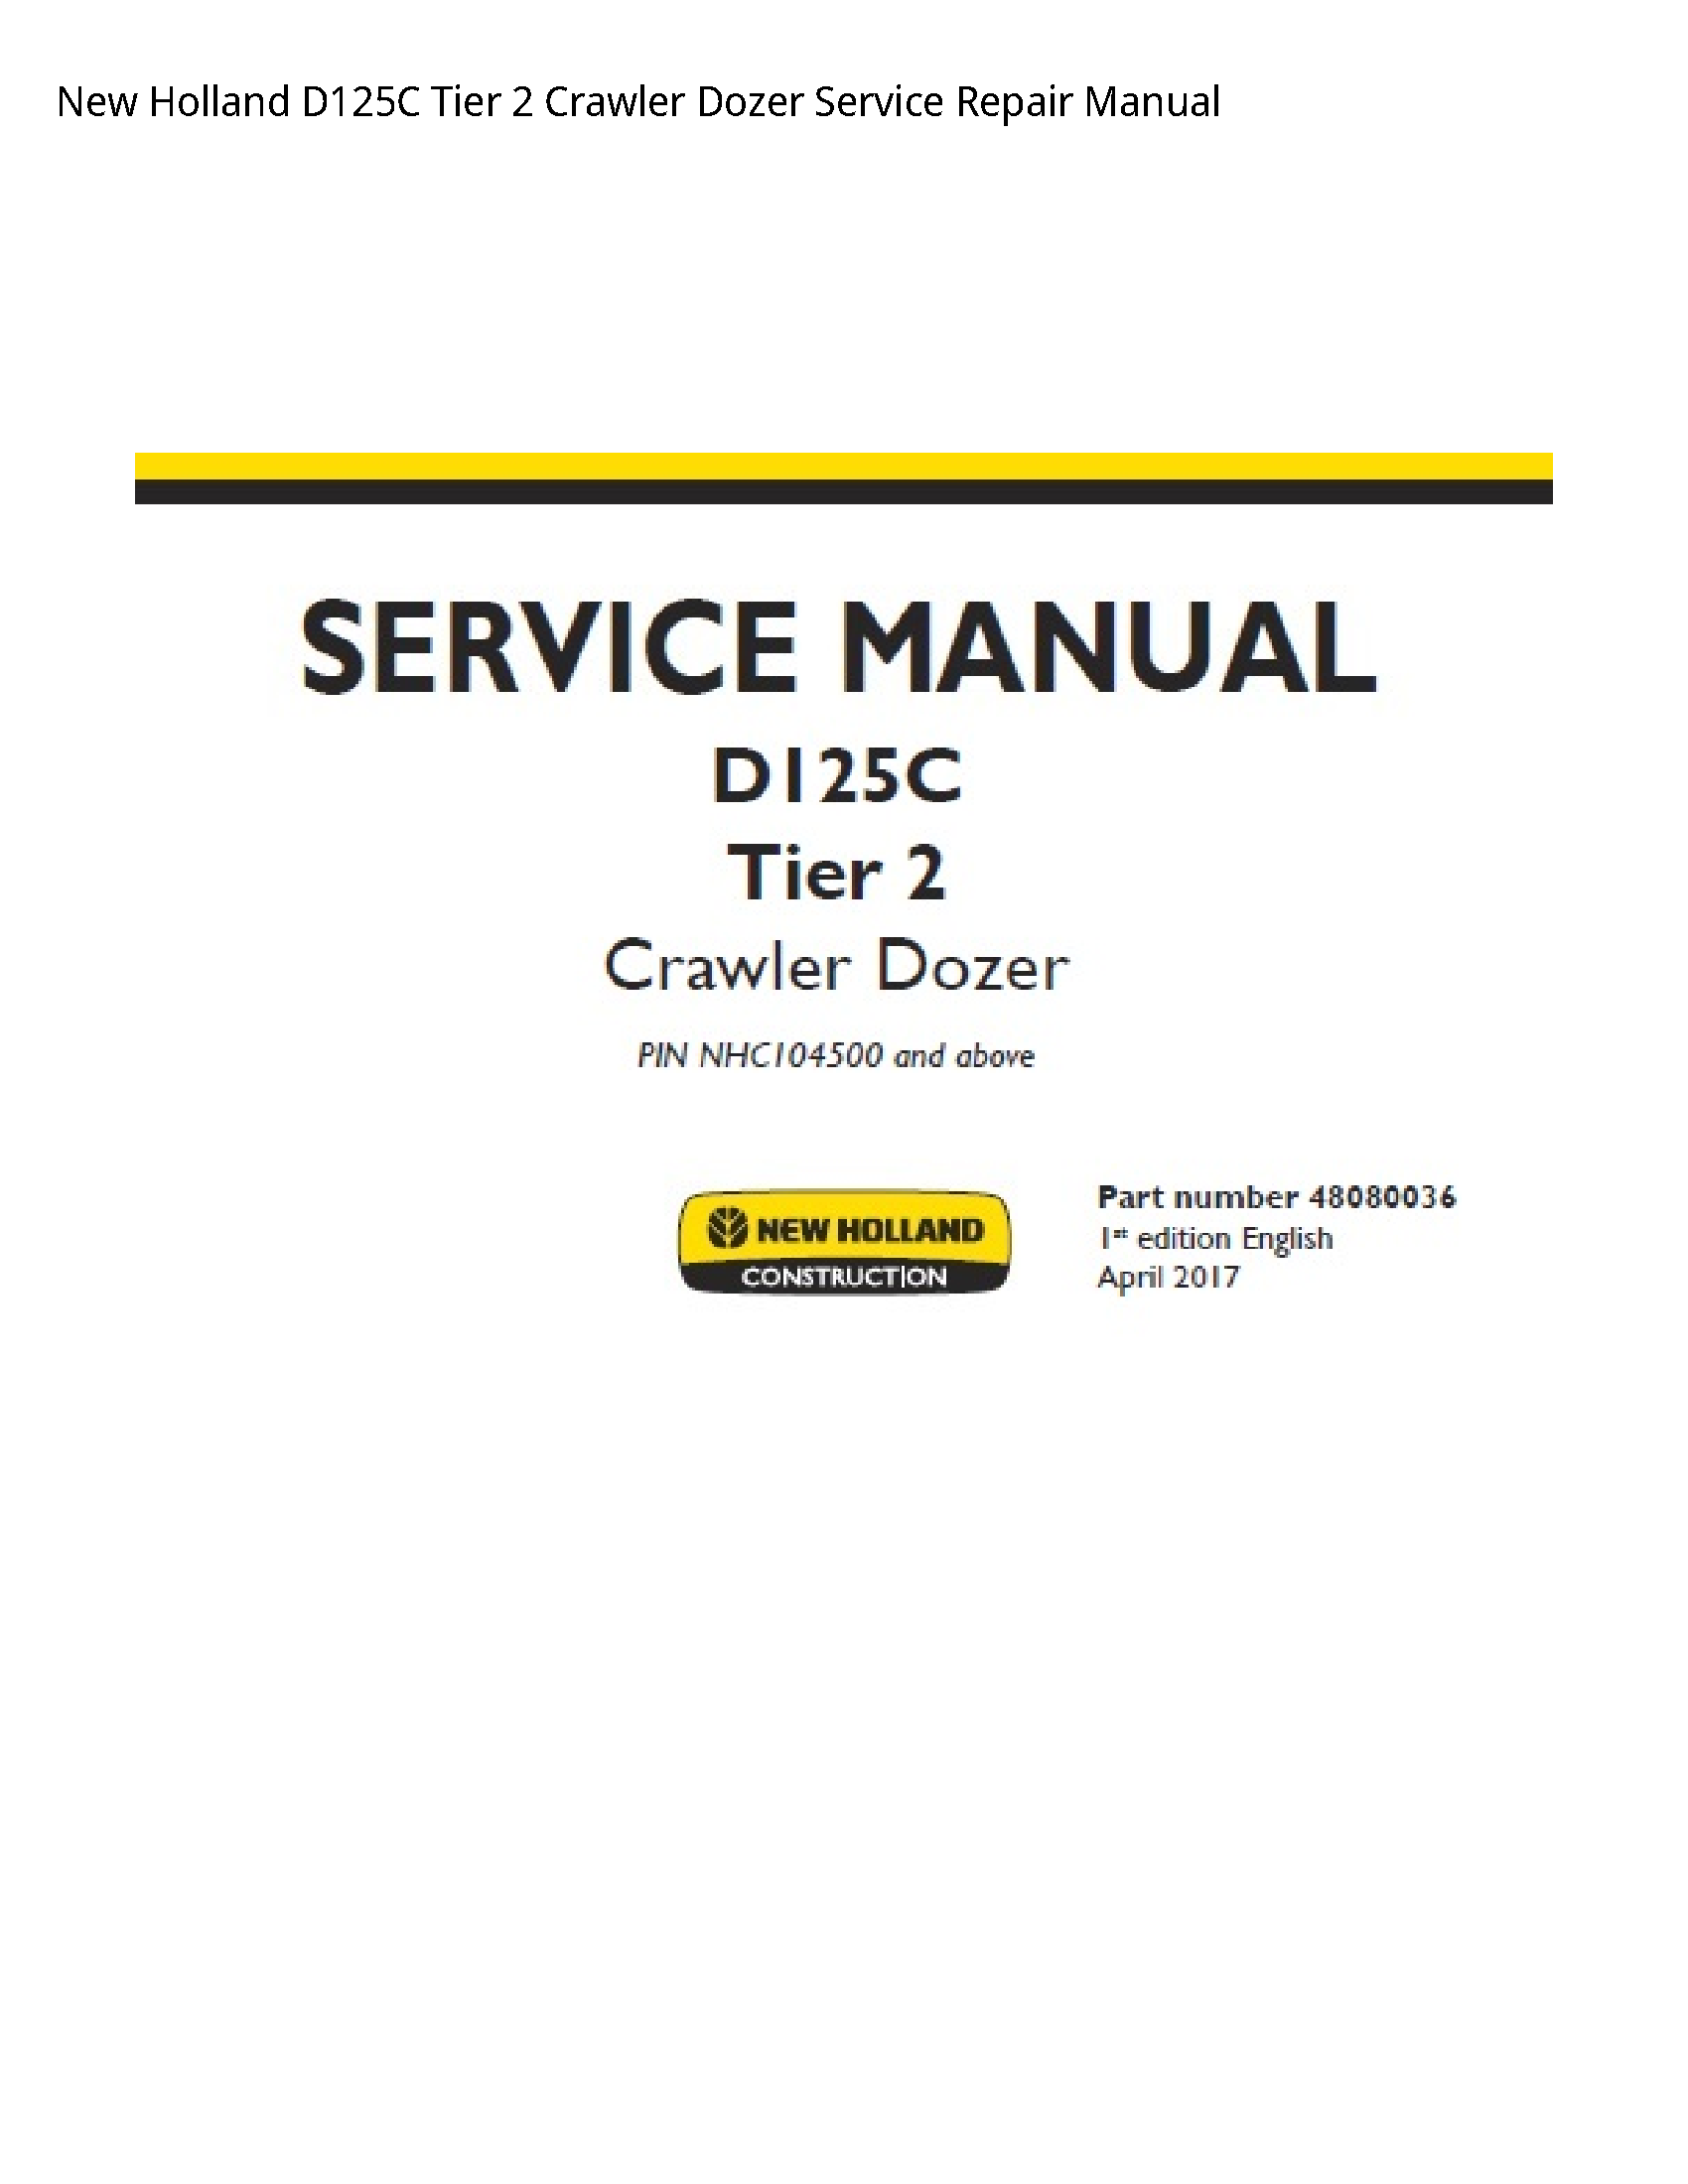 New Holland D125C Tier Crawler Dozer manual